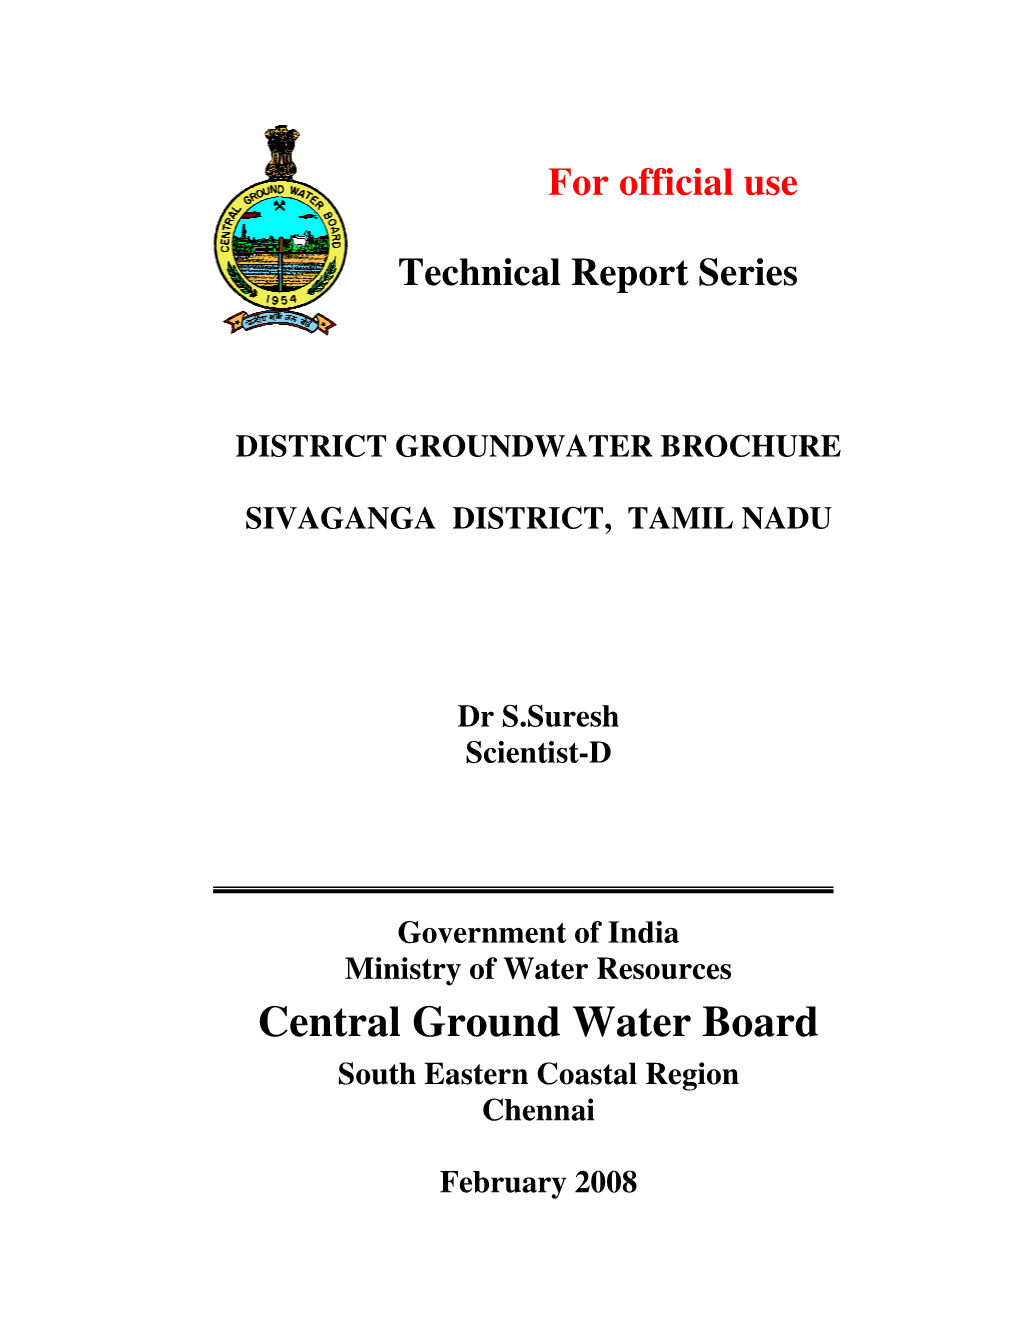 Sivaganga District, Tamil Nadu